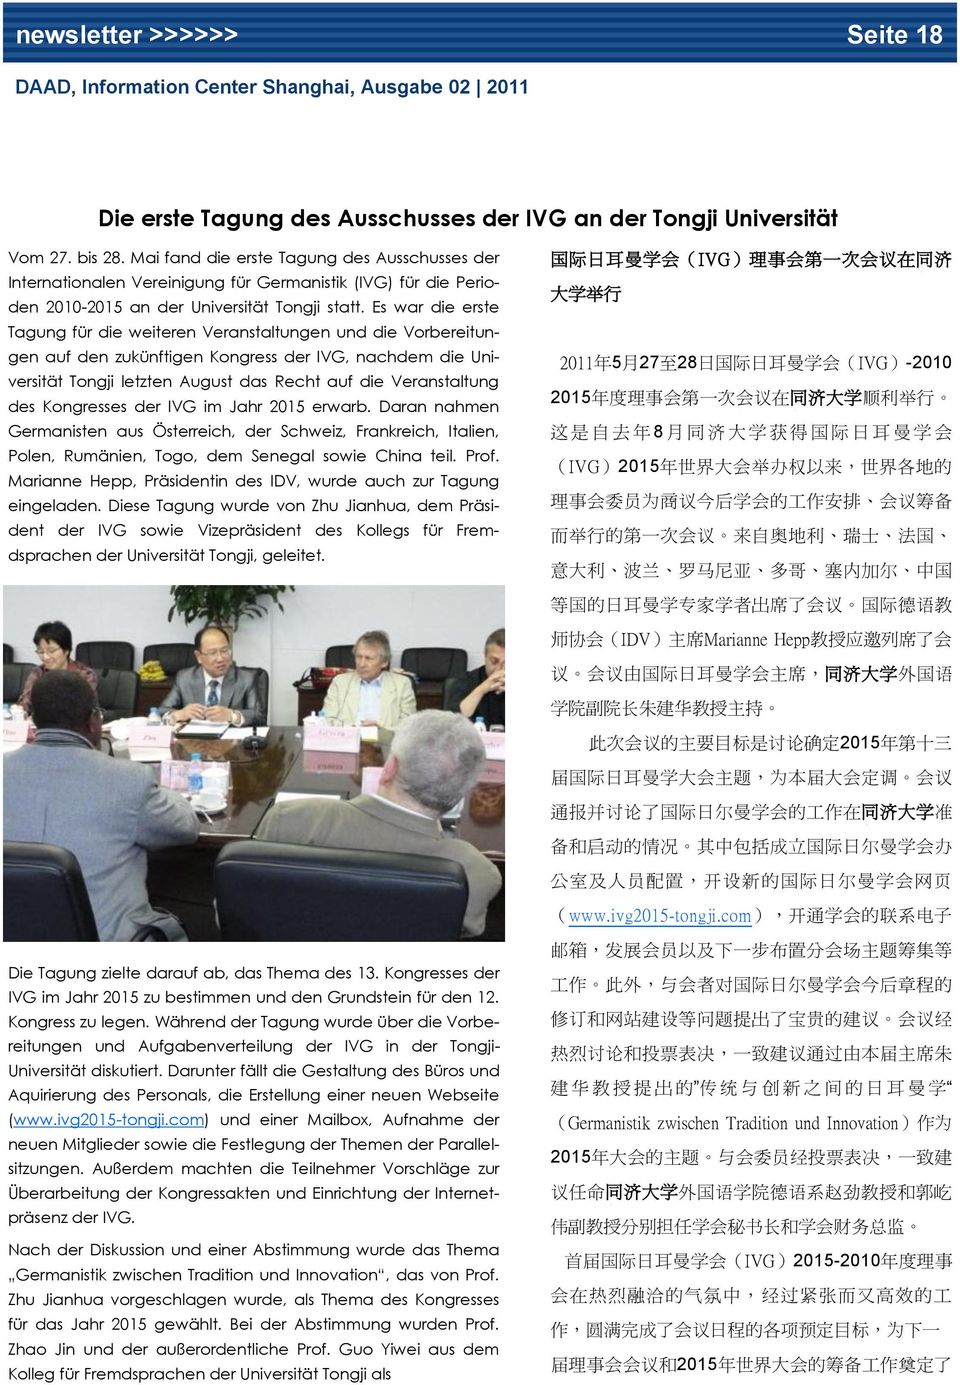 Es war die erste Tagung für die weiteren Veranstaltungen und die Vorbereitungen auf den zukünftigen Kongress der IVG, nachdem die Universität Tongji letzten August das Recht auf die Veranstaltung des